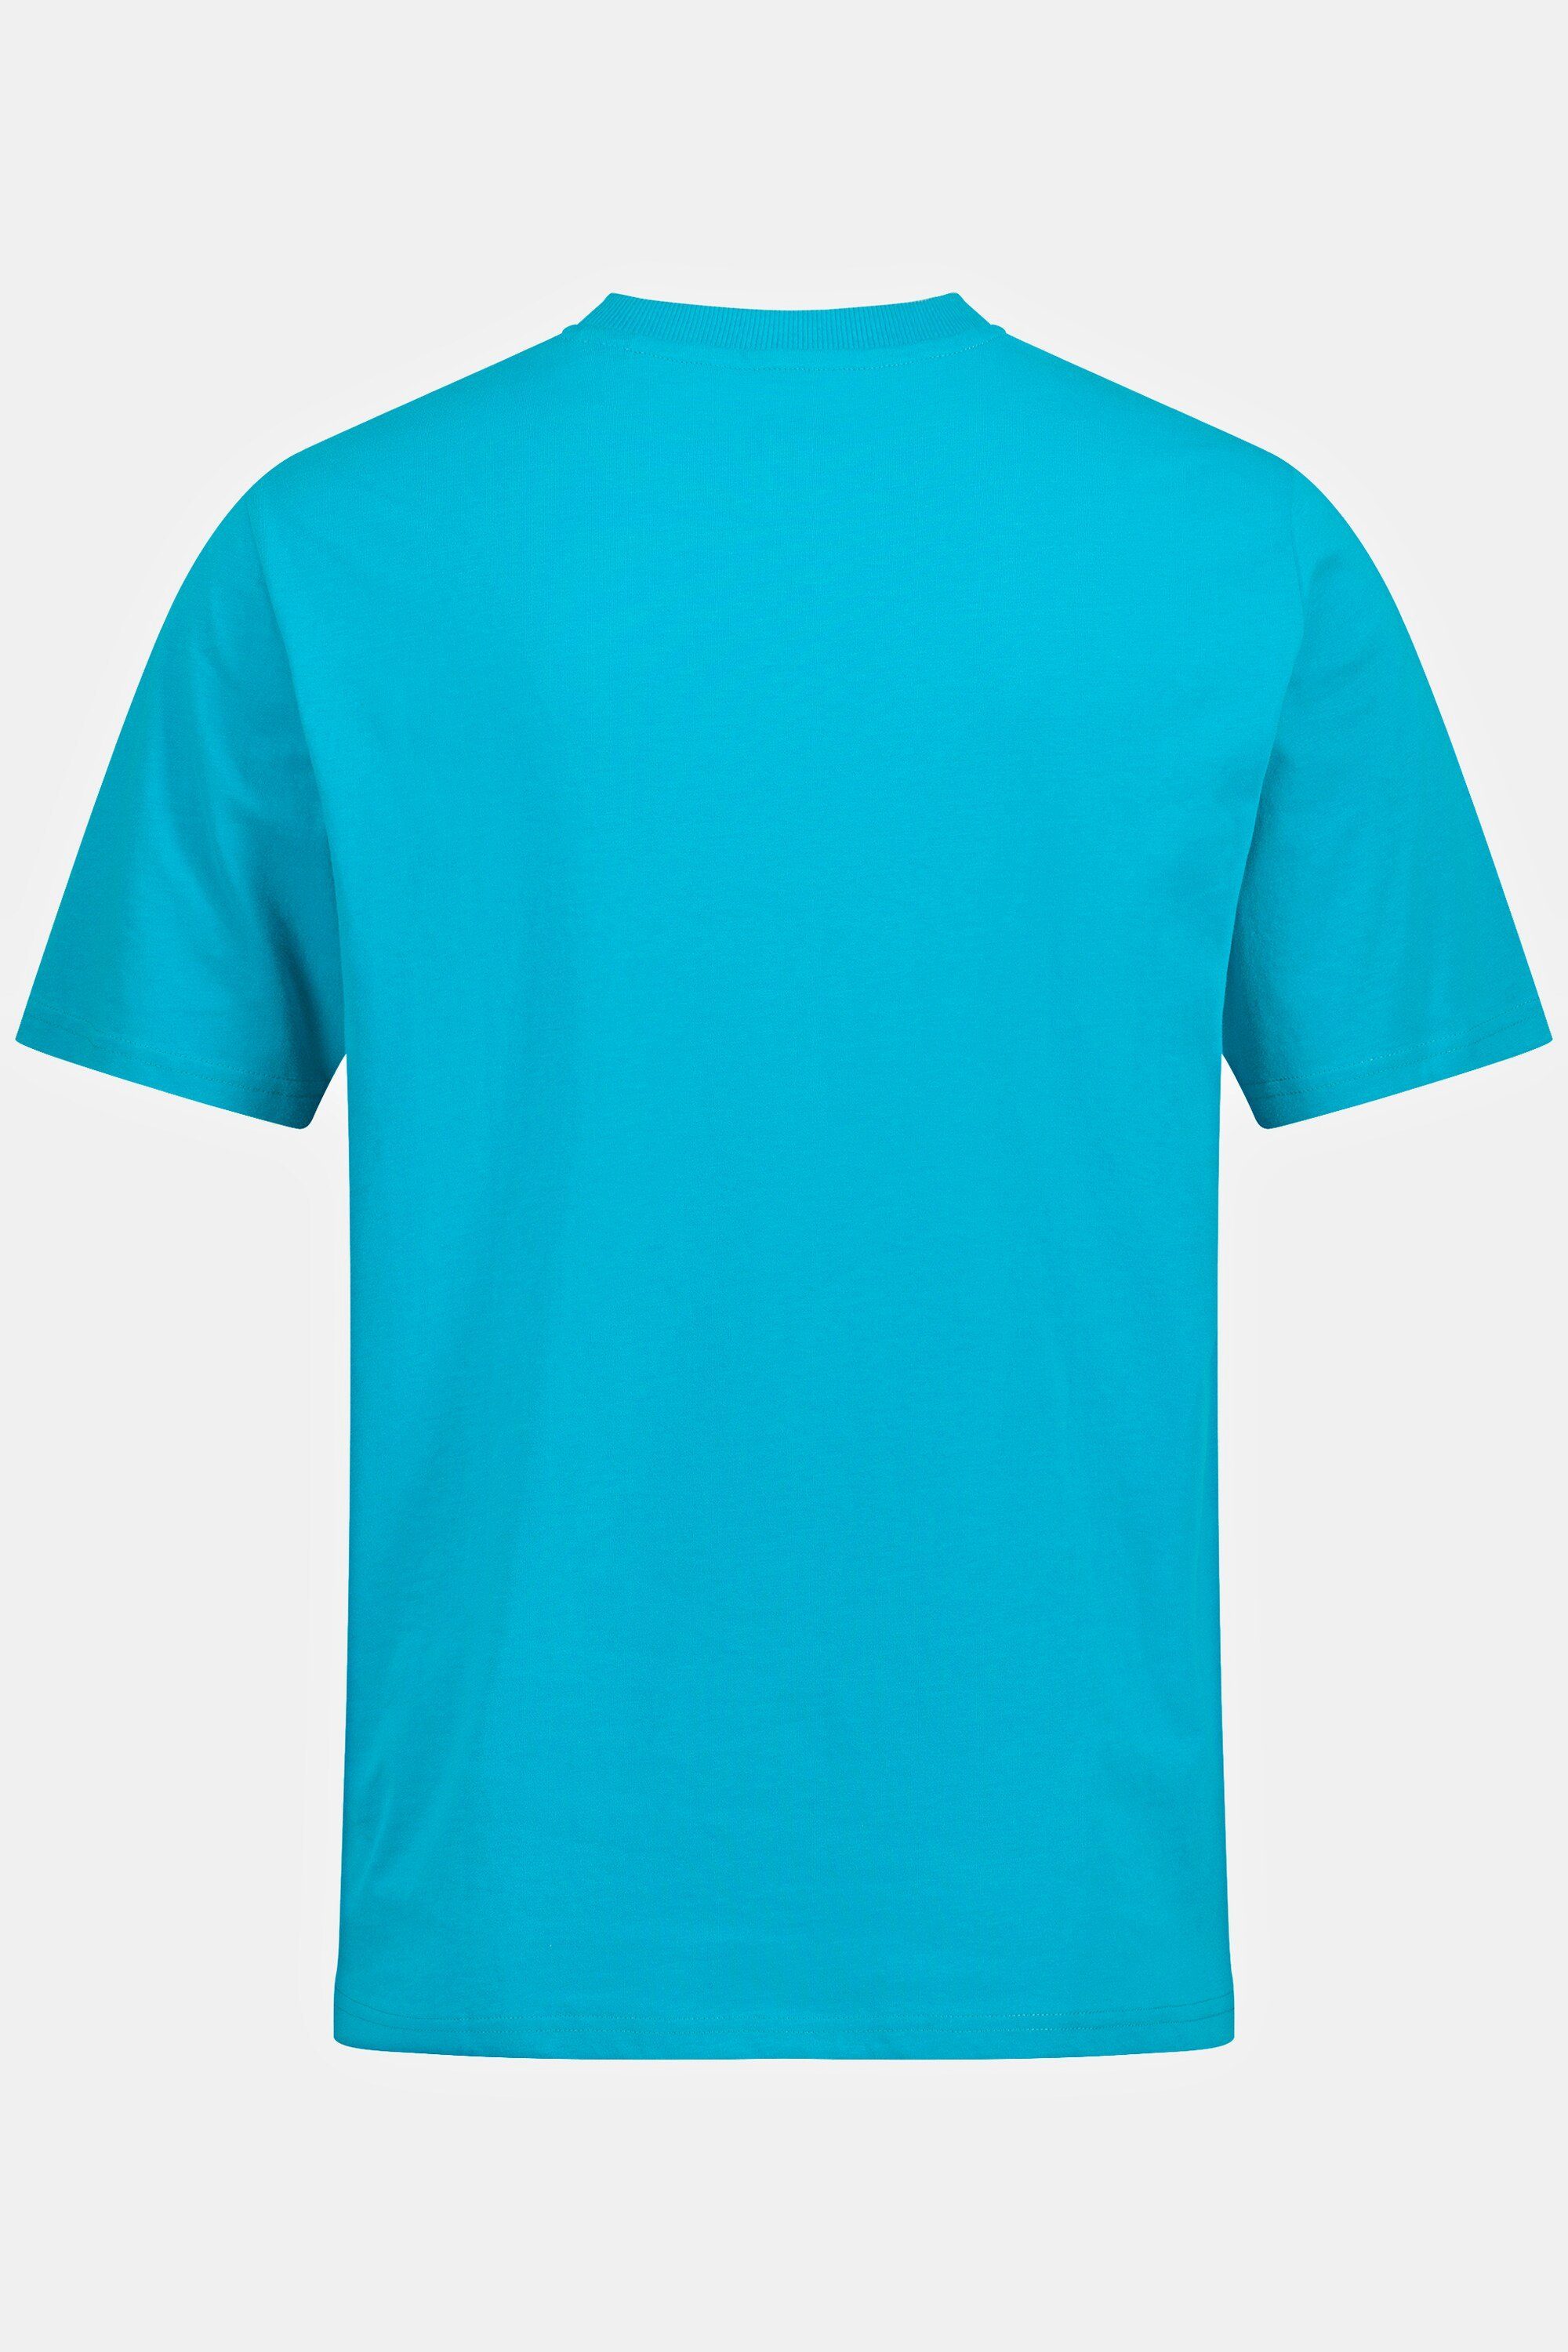 Basic JP1880 Henley dunkles Halbarm türkis T-Shirt Knopfleiste